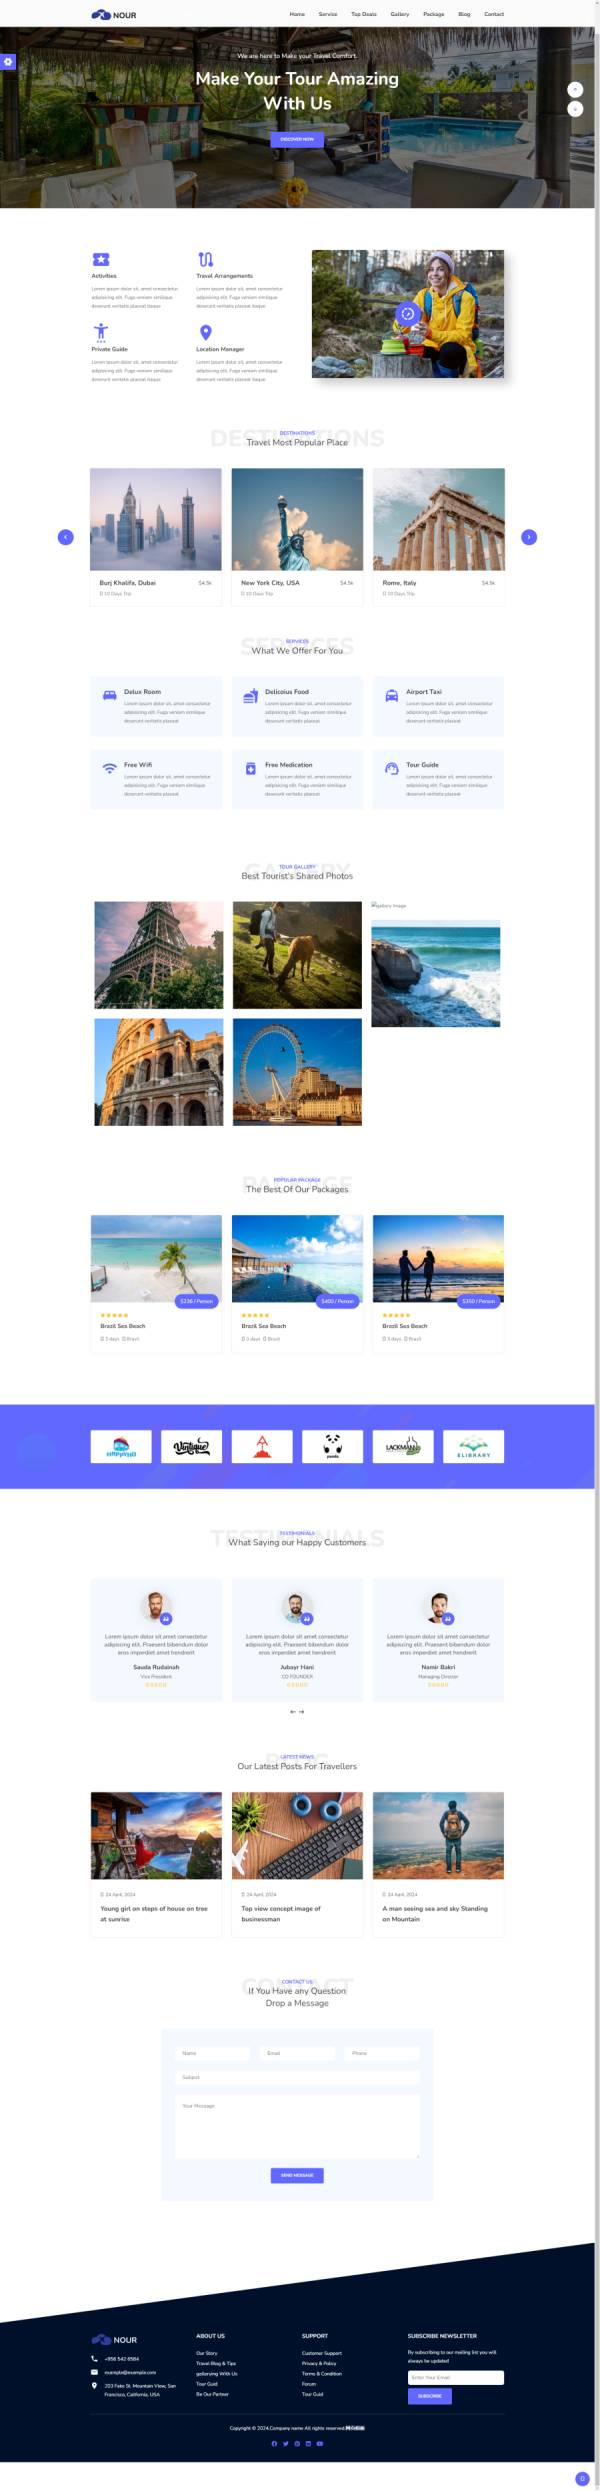 响应式旅游网页设计页面代码模板